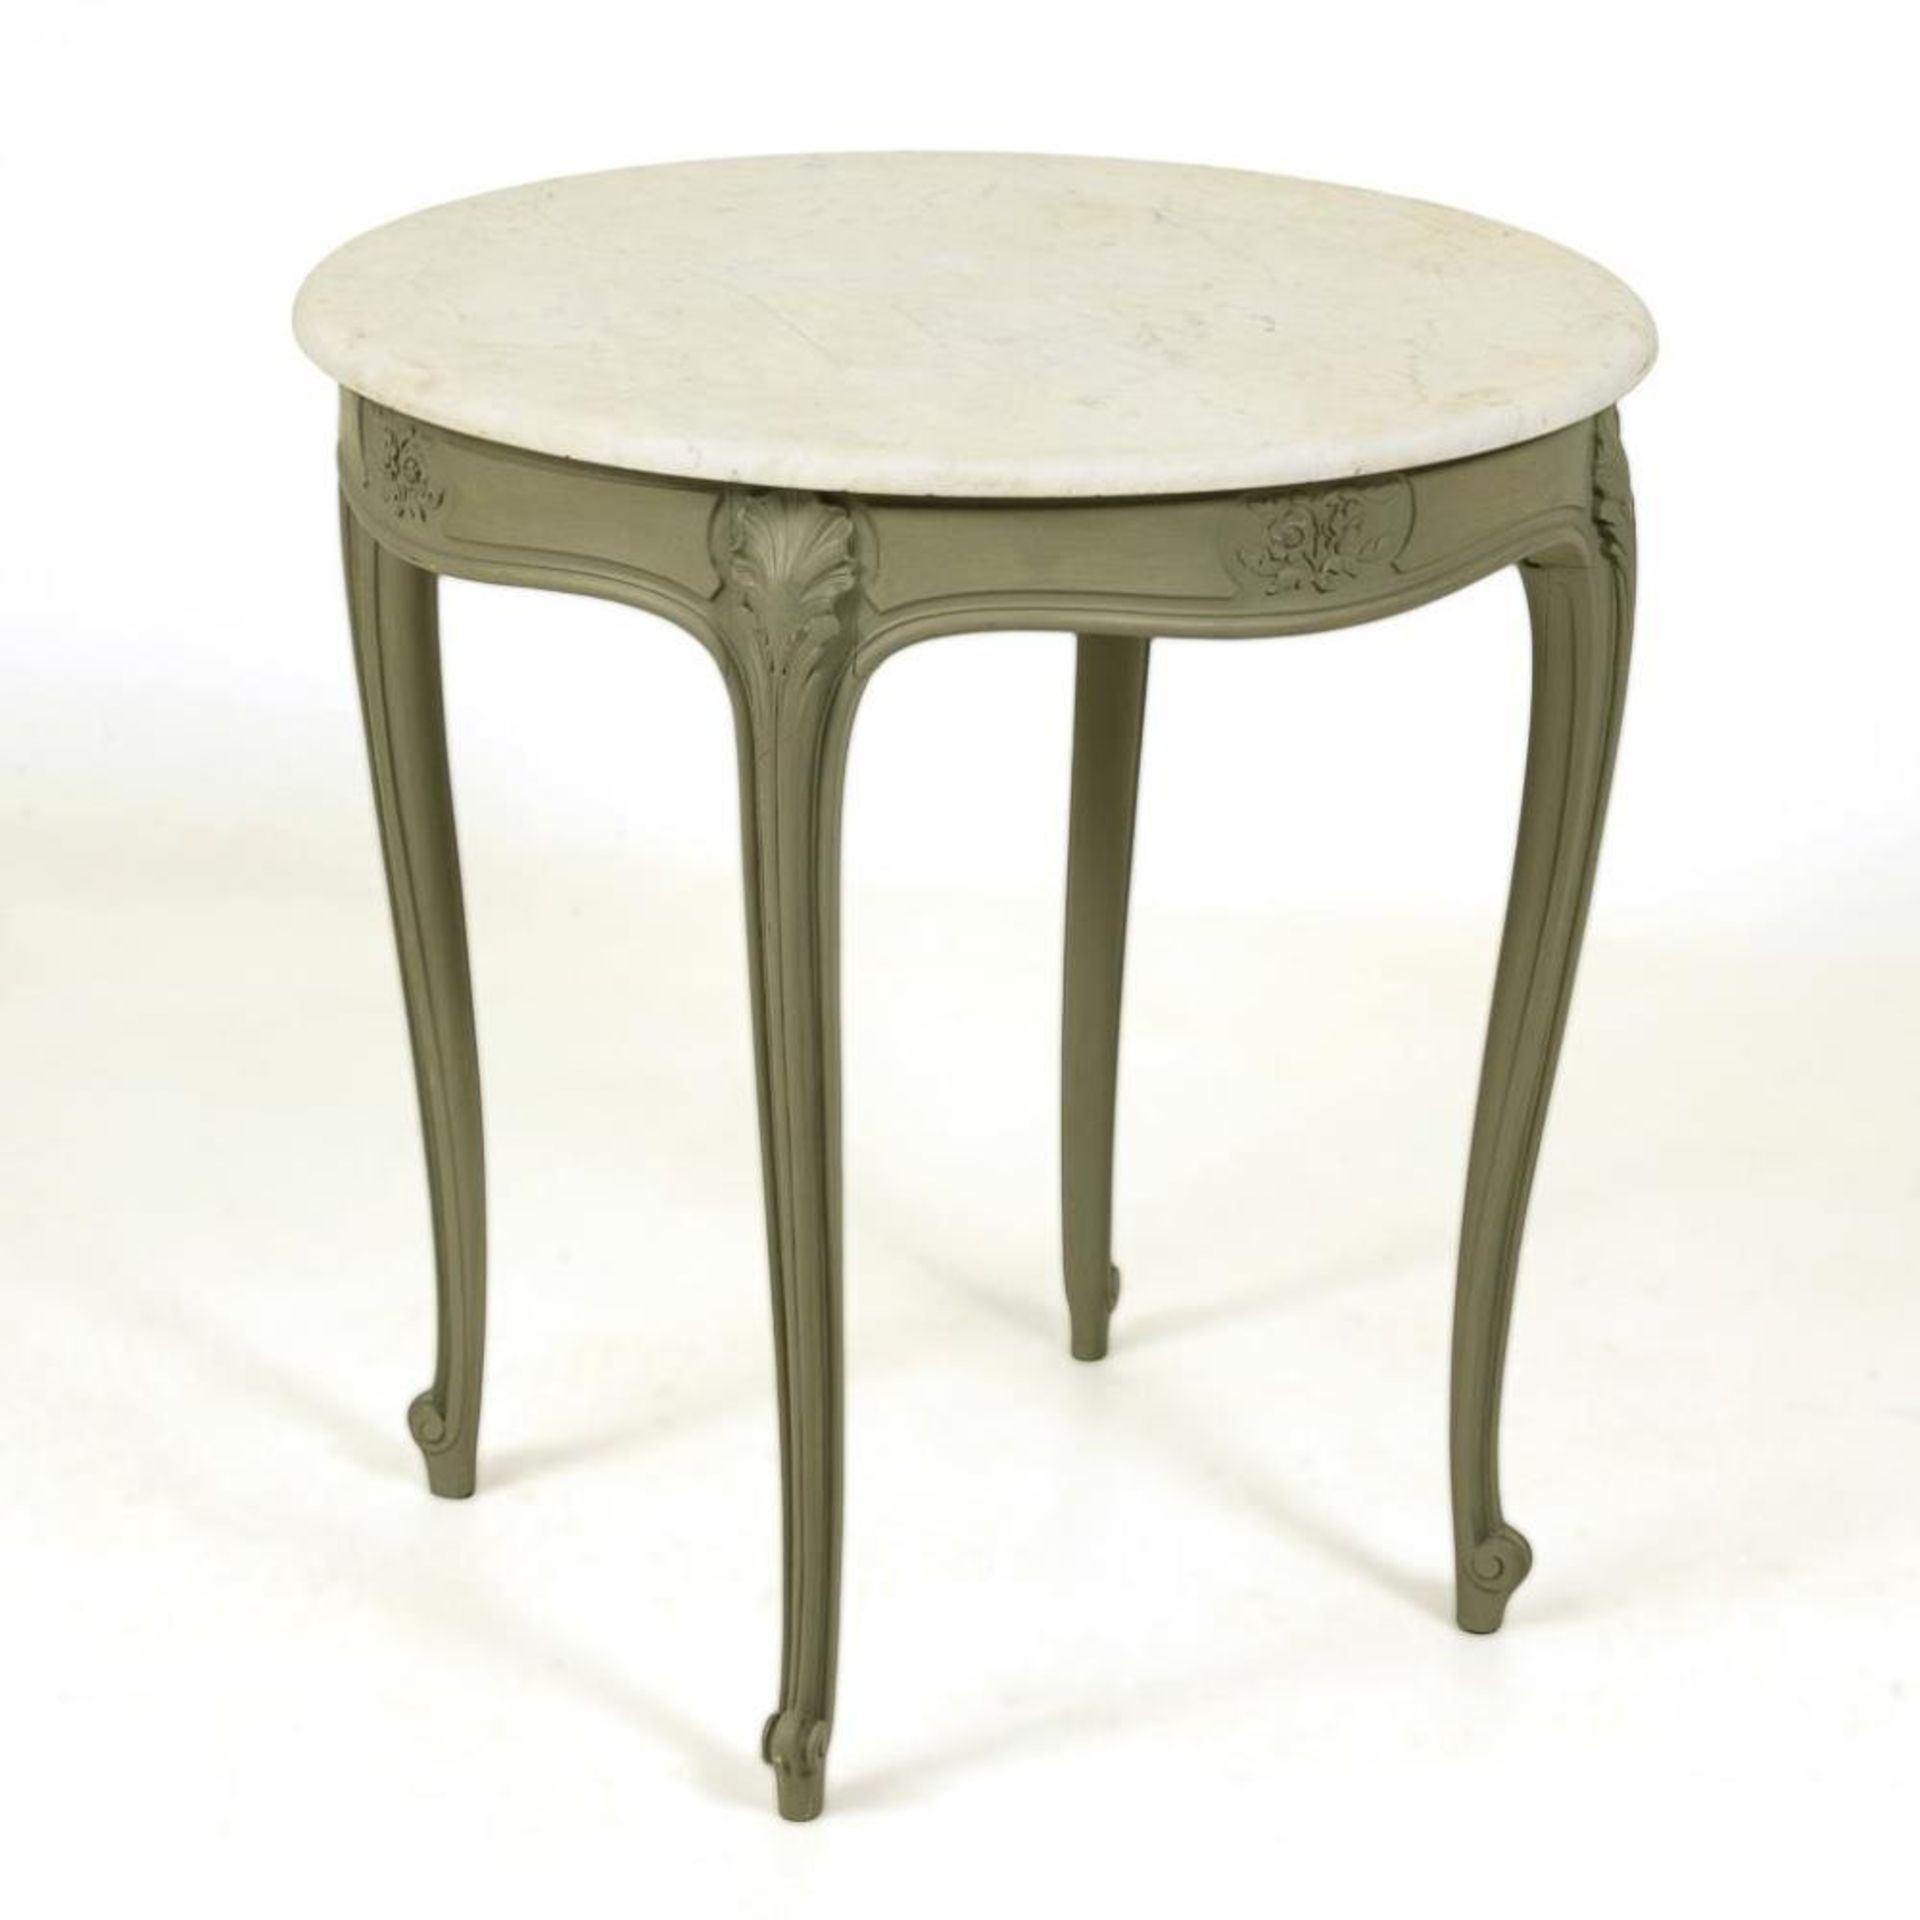 Runder Tisch im Barock-Stil mit Marmorplatte.